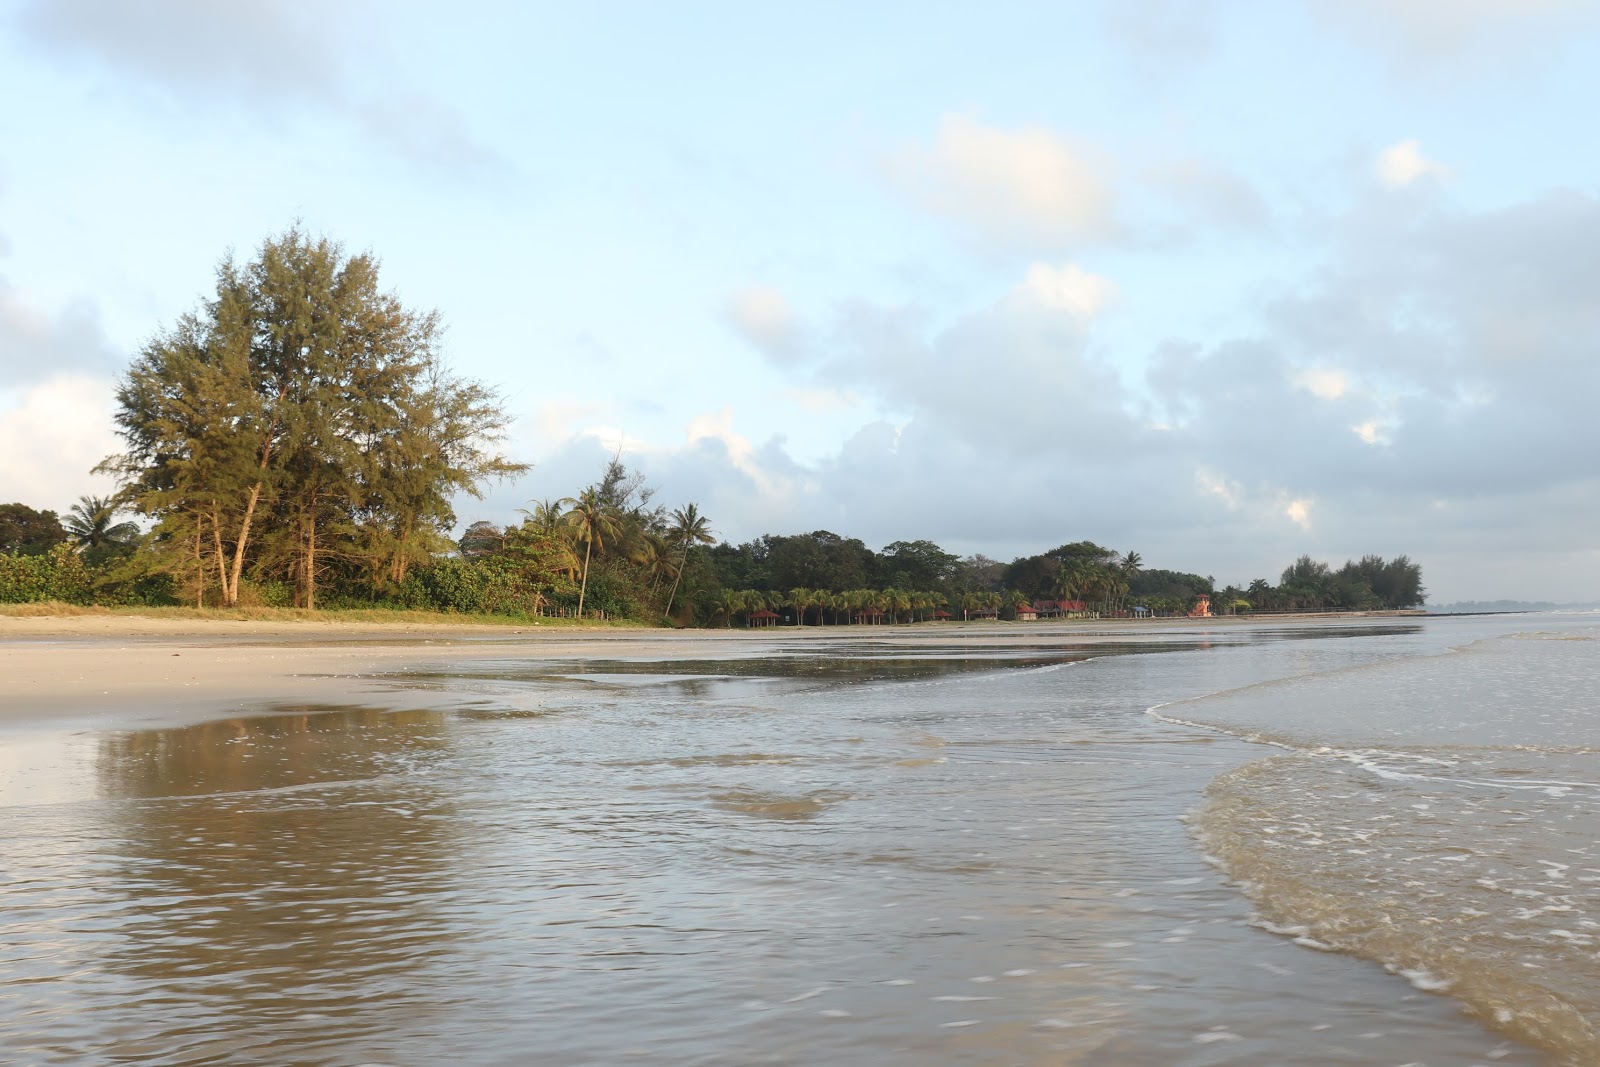 Foto de Beserah Beach - lugar popular entre los conocedores del relax